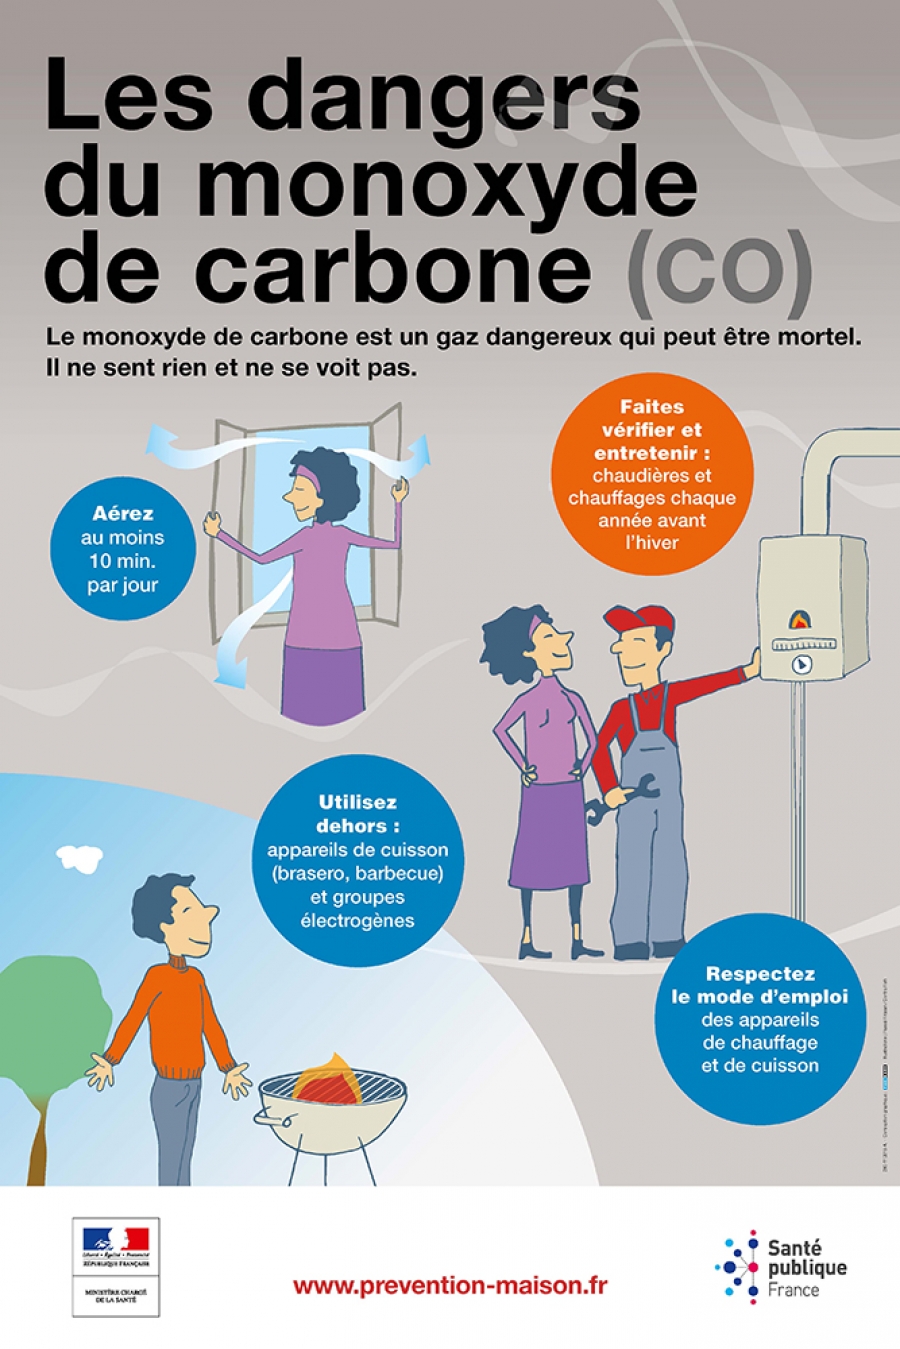 Monoxyde de carbone et impact sur la santé - Ville de La Valette-du-Var  Ville de La Valette-du-Var